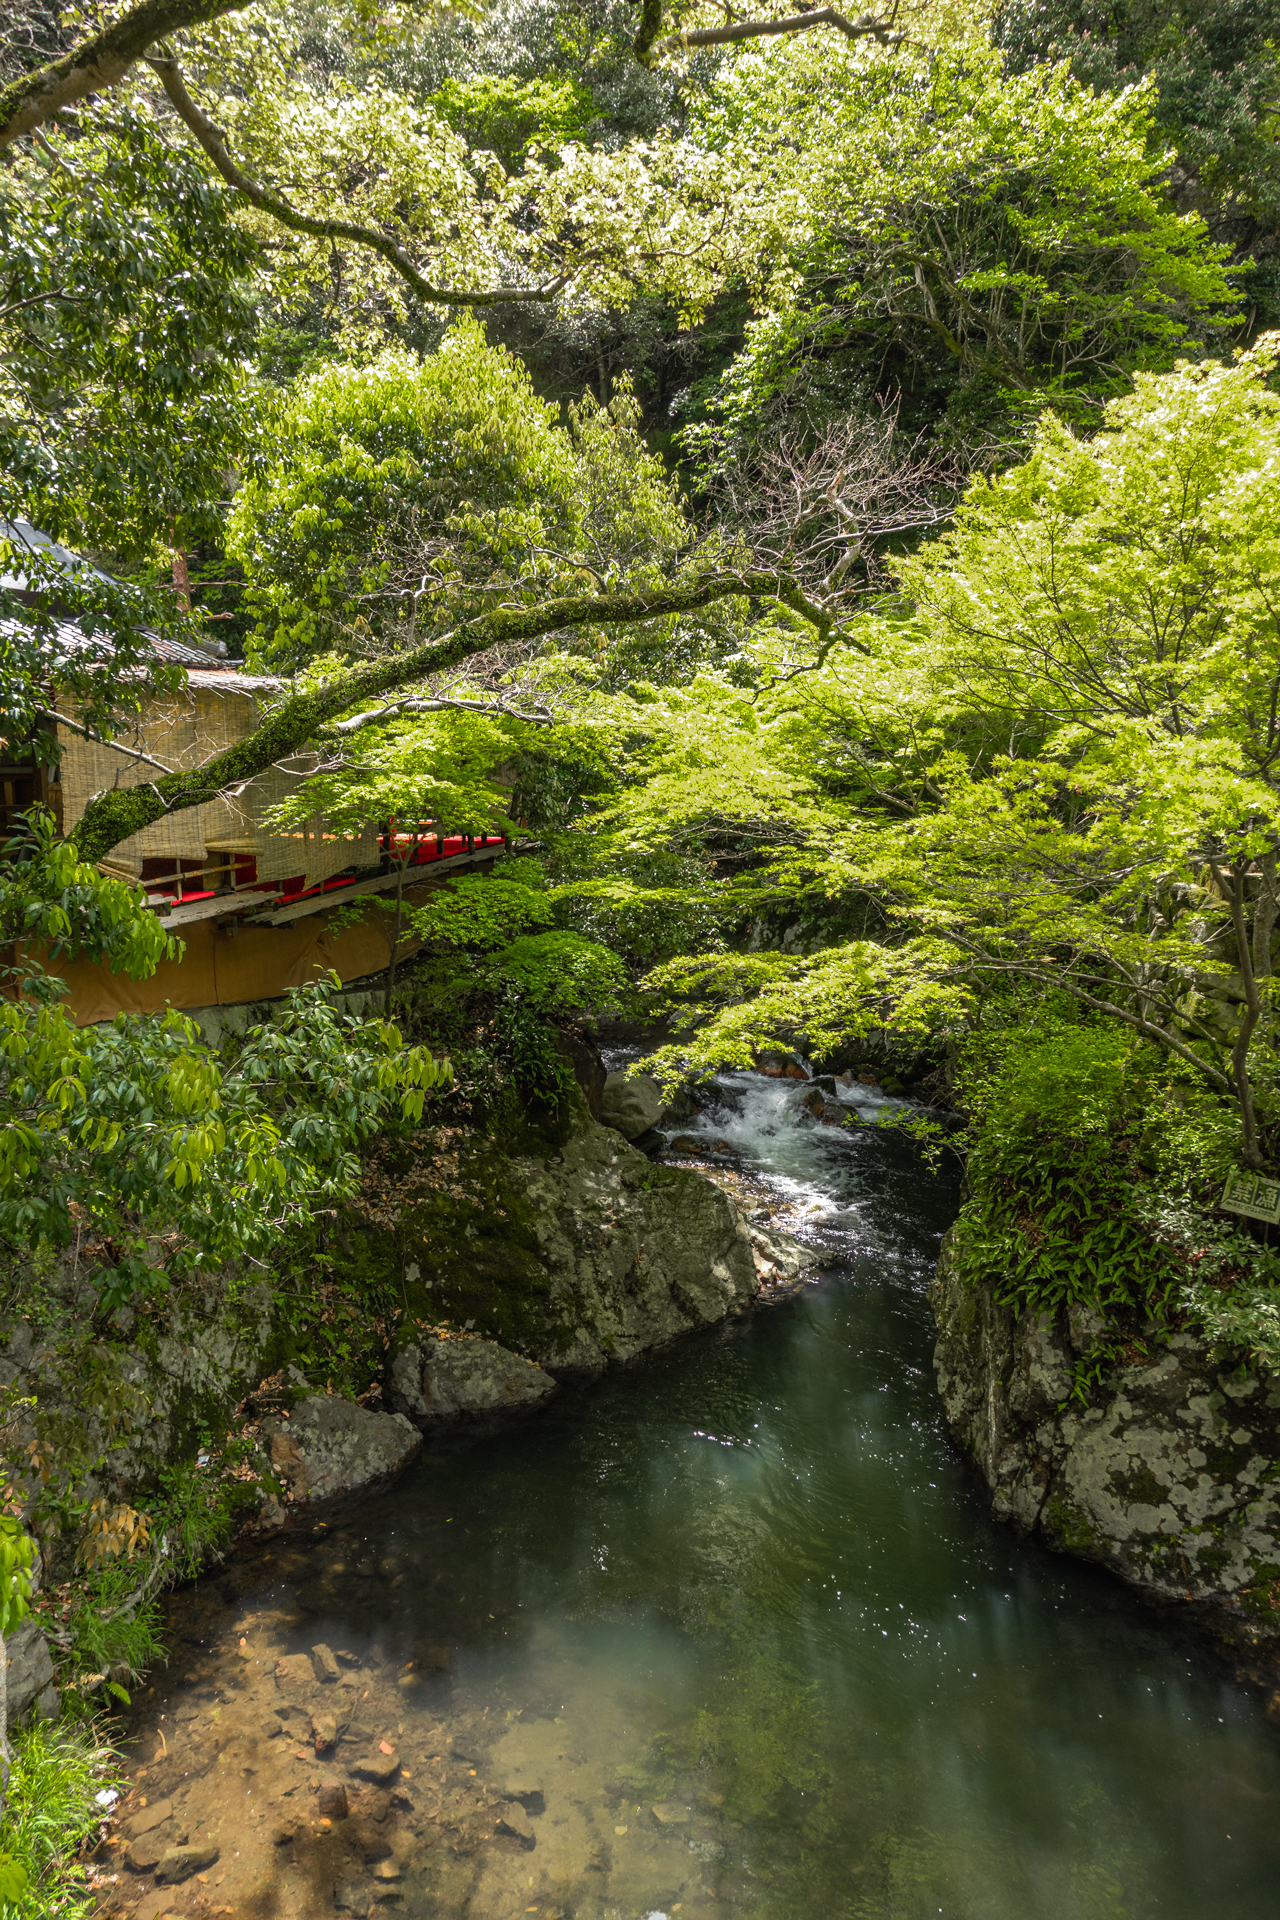 DSC05966 大阪府 箕面大滝(日本の滝百選に選定された新緑に染まる絶景の滝スポット! 写真の紹介、アクセス情報など)